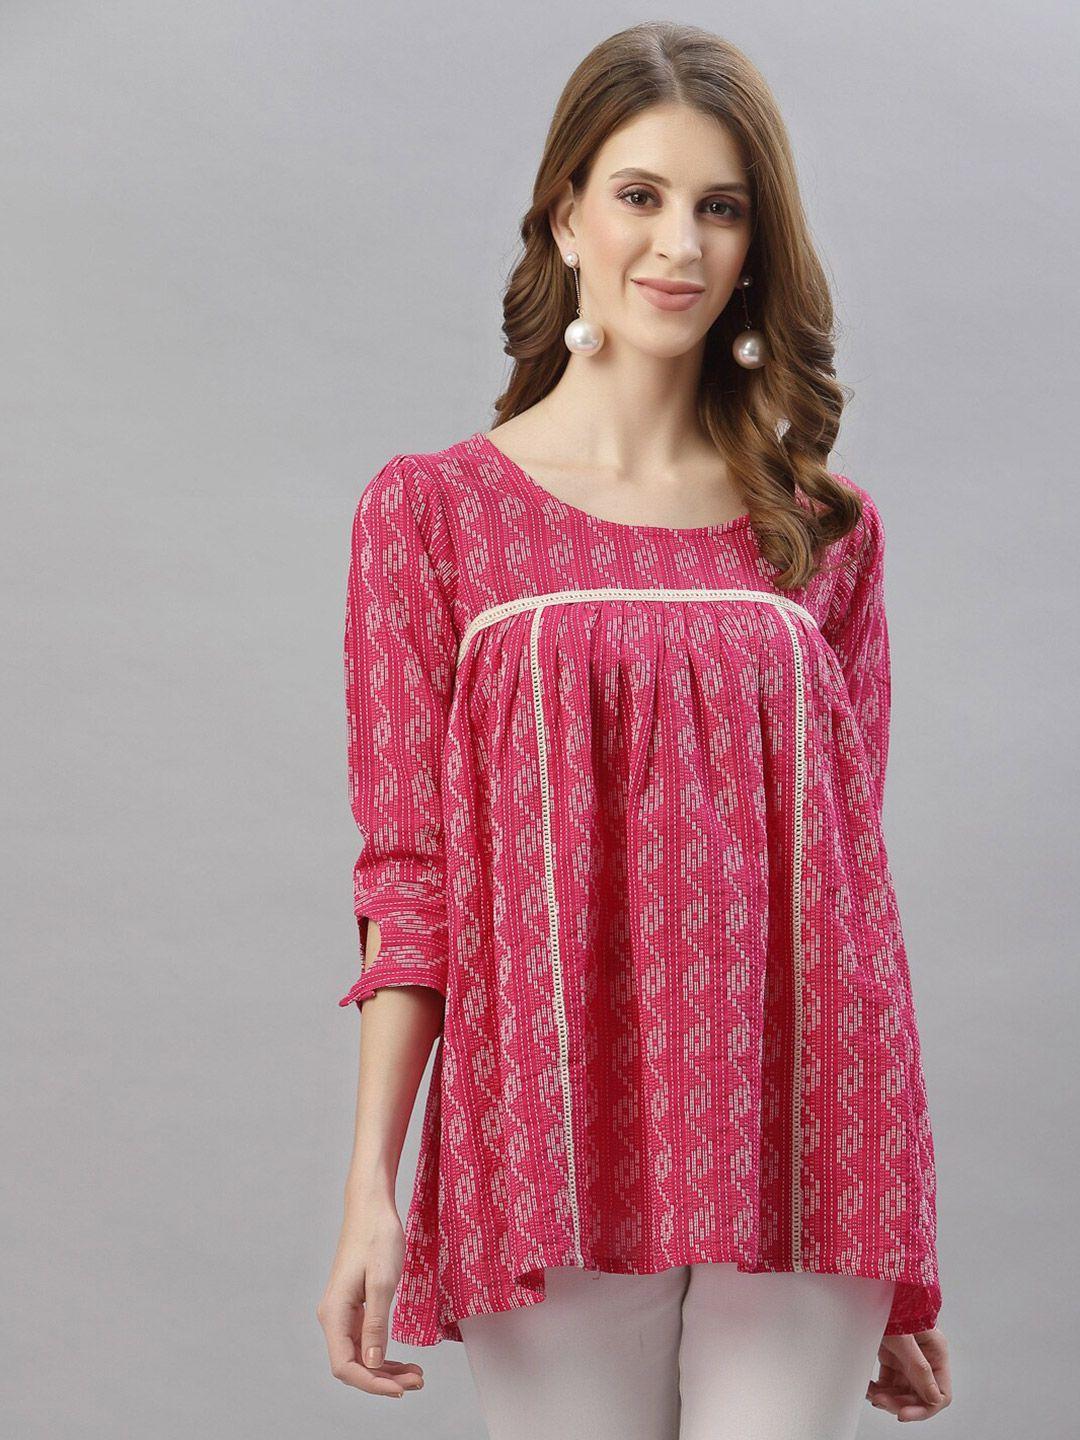 serona fabrics pink & white tunic